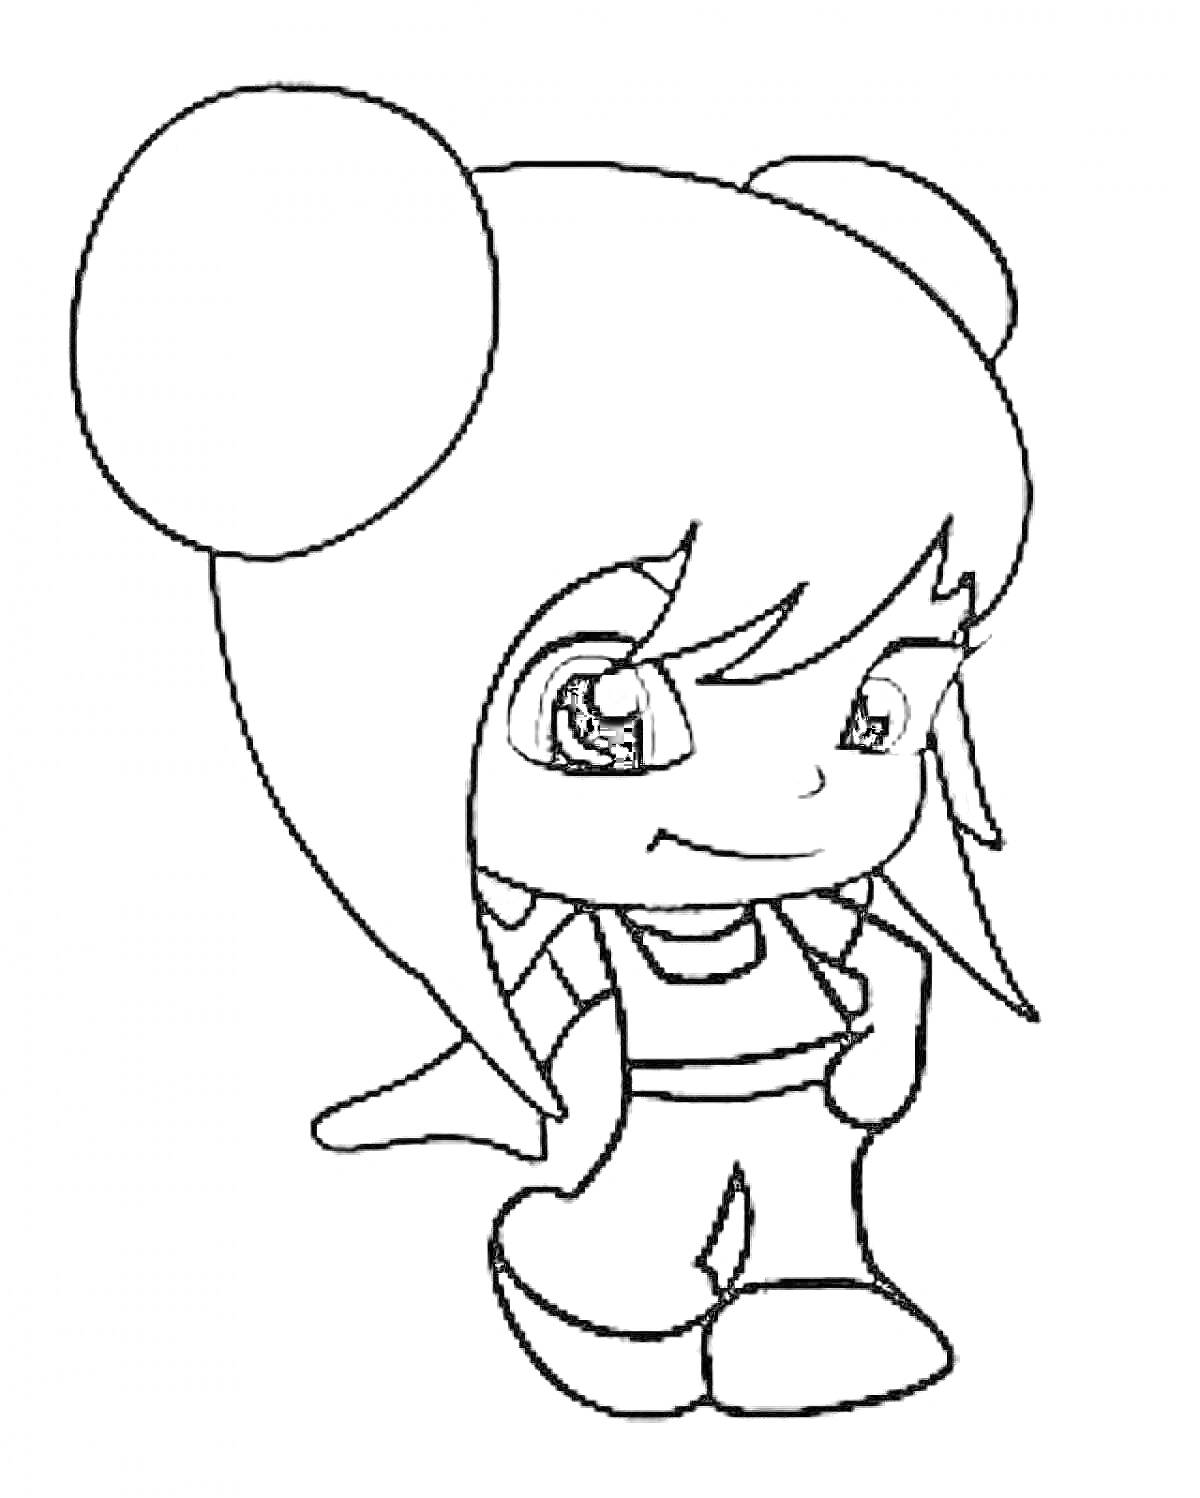 Раскраска Пинипон-девочка с двумя большими заколками, длинные волосы, костюм с шортами